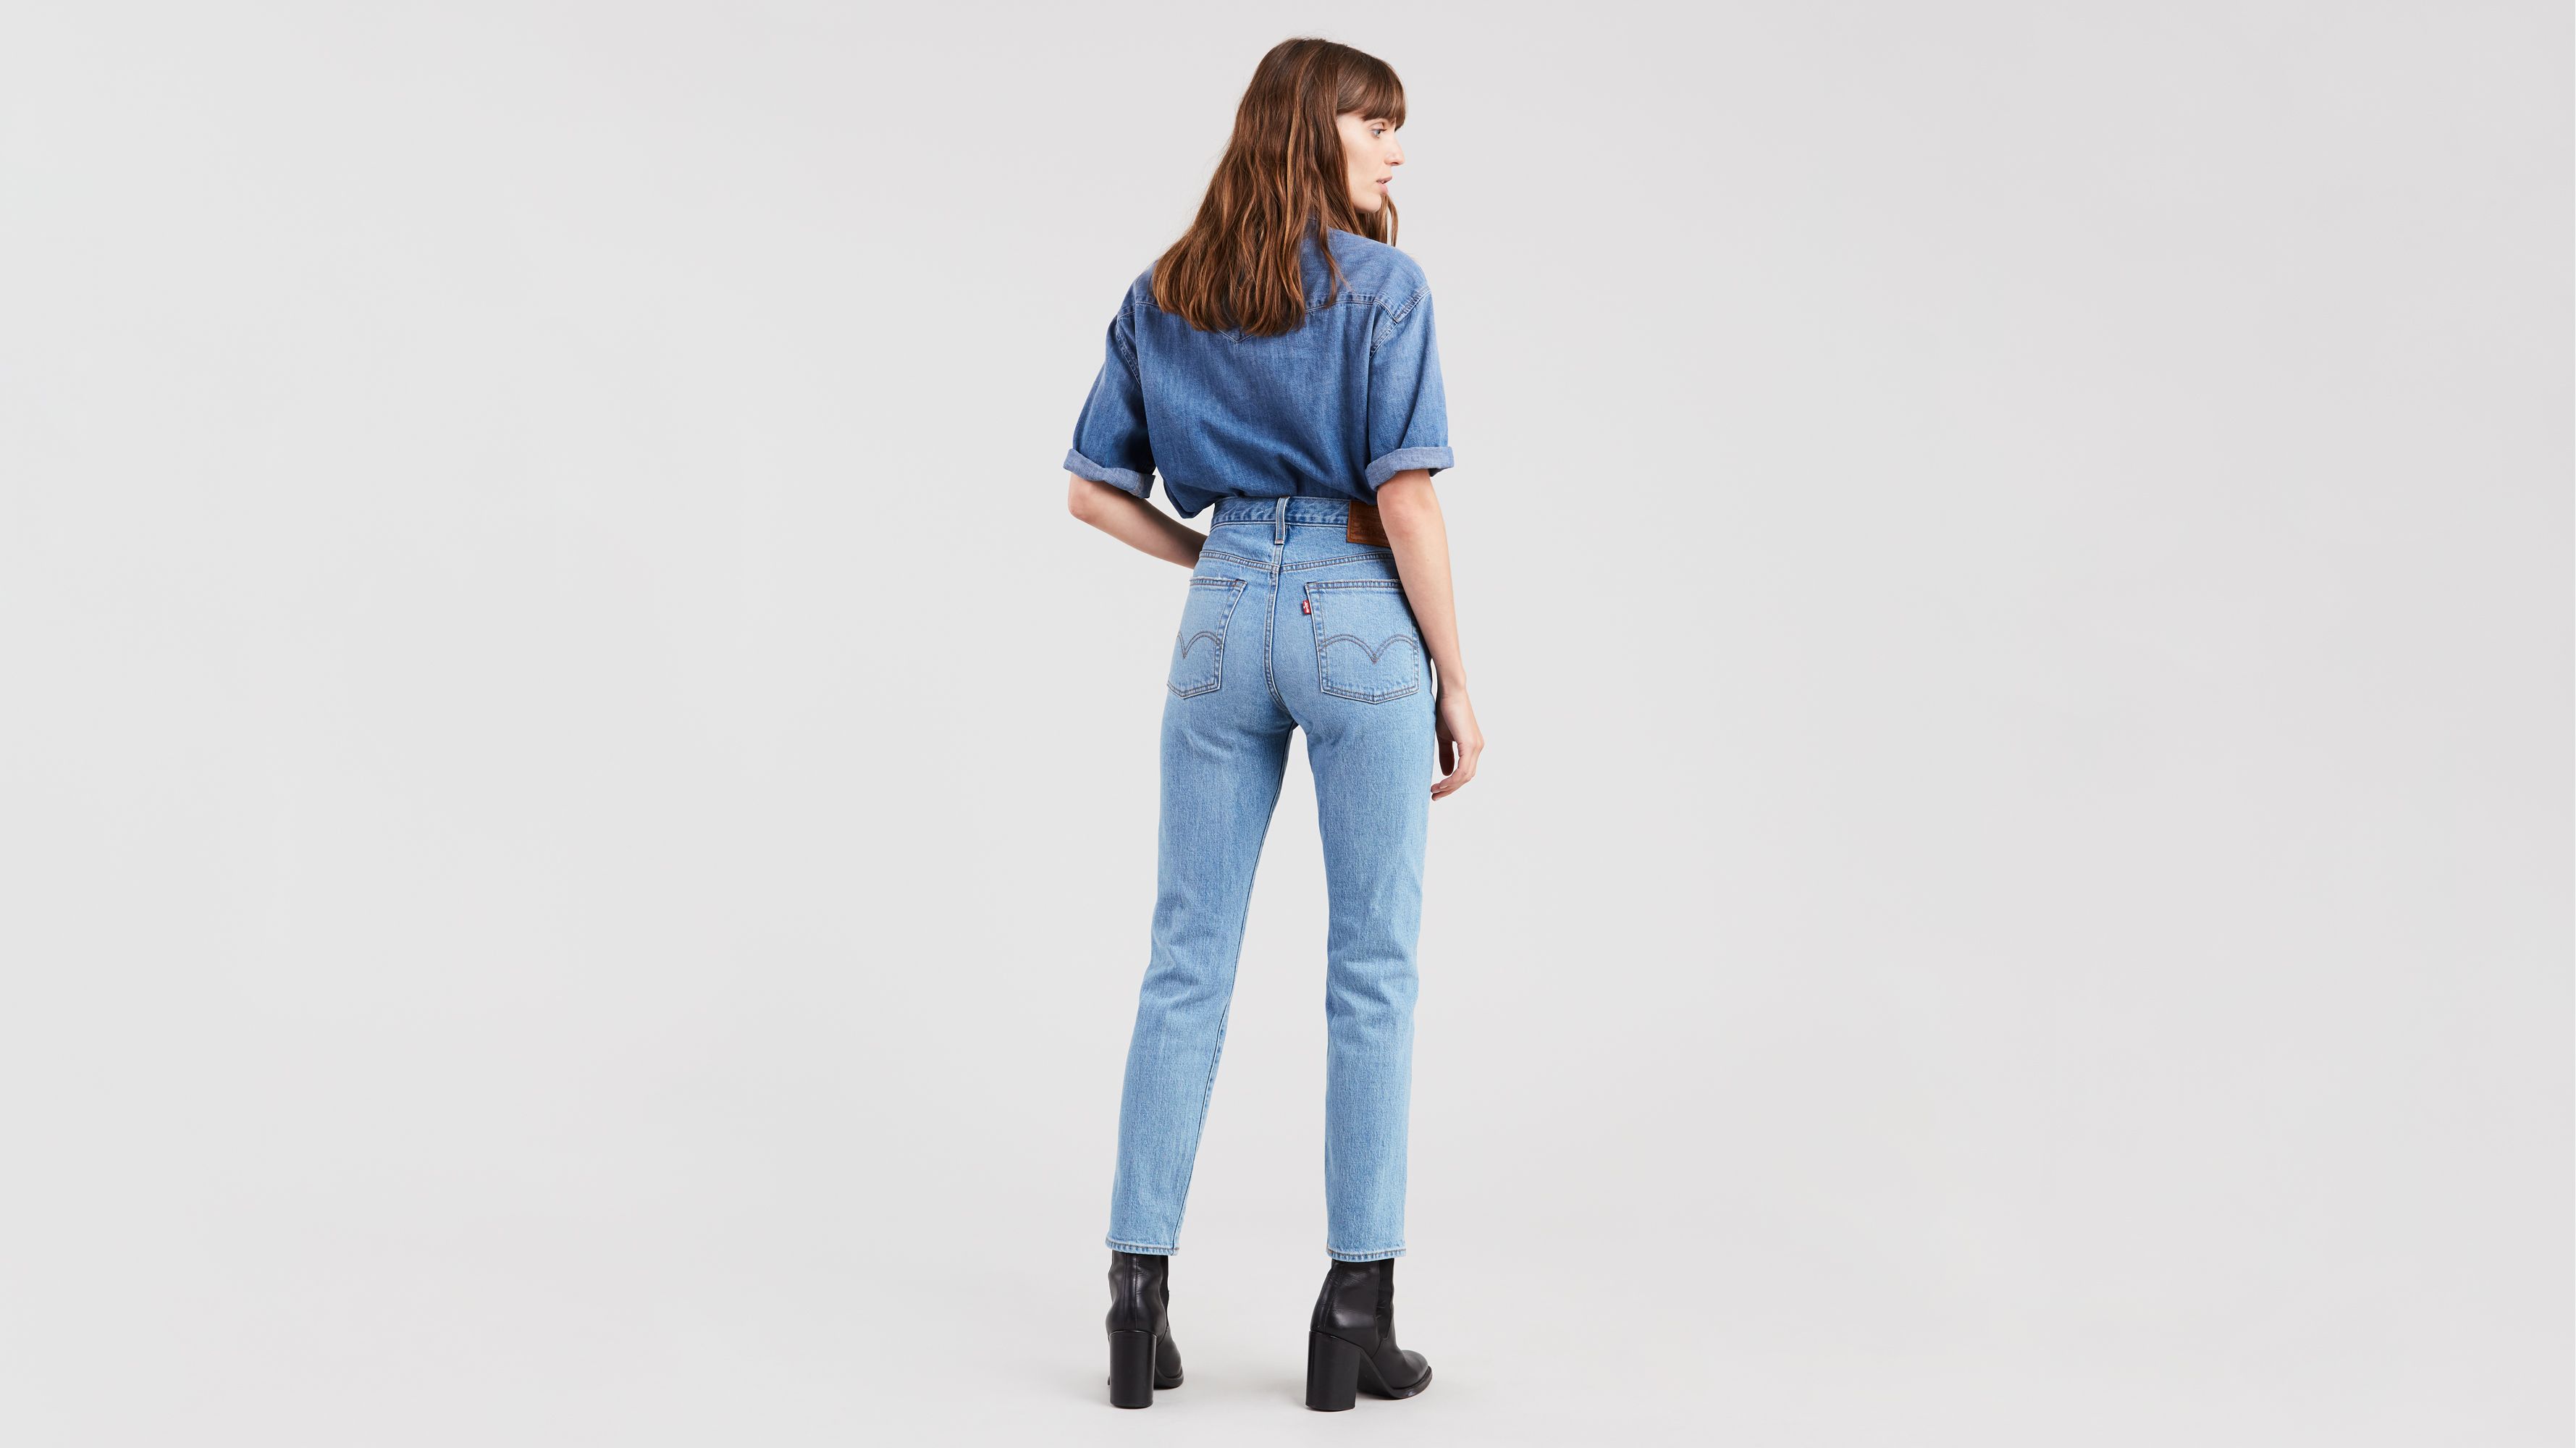 wedgie fit women's jeans levi's premium 